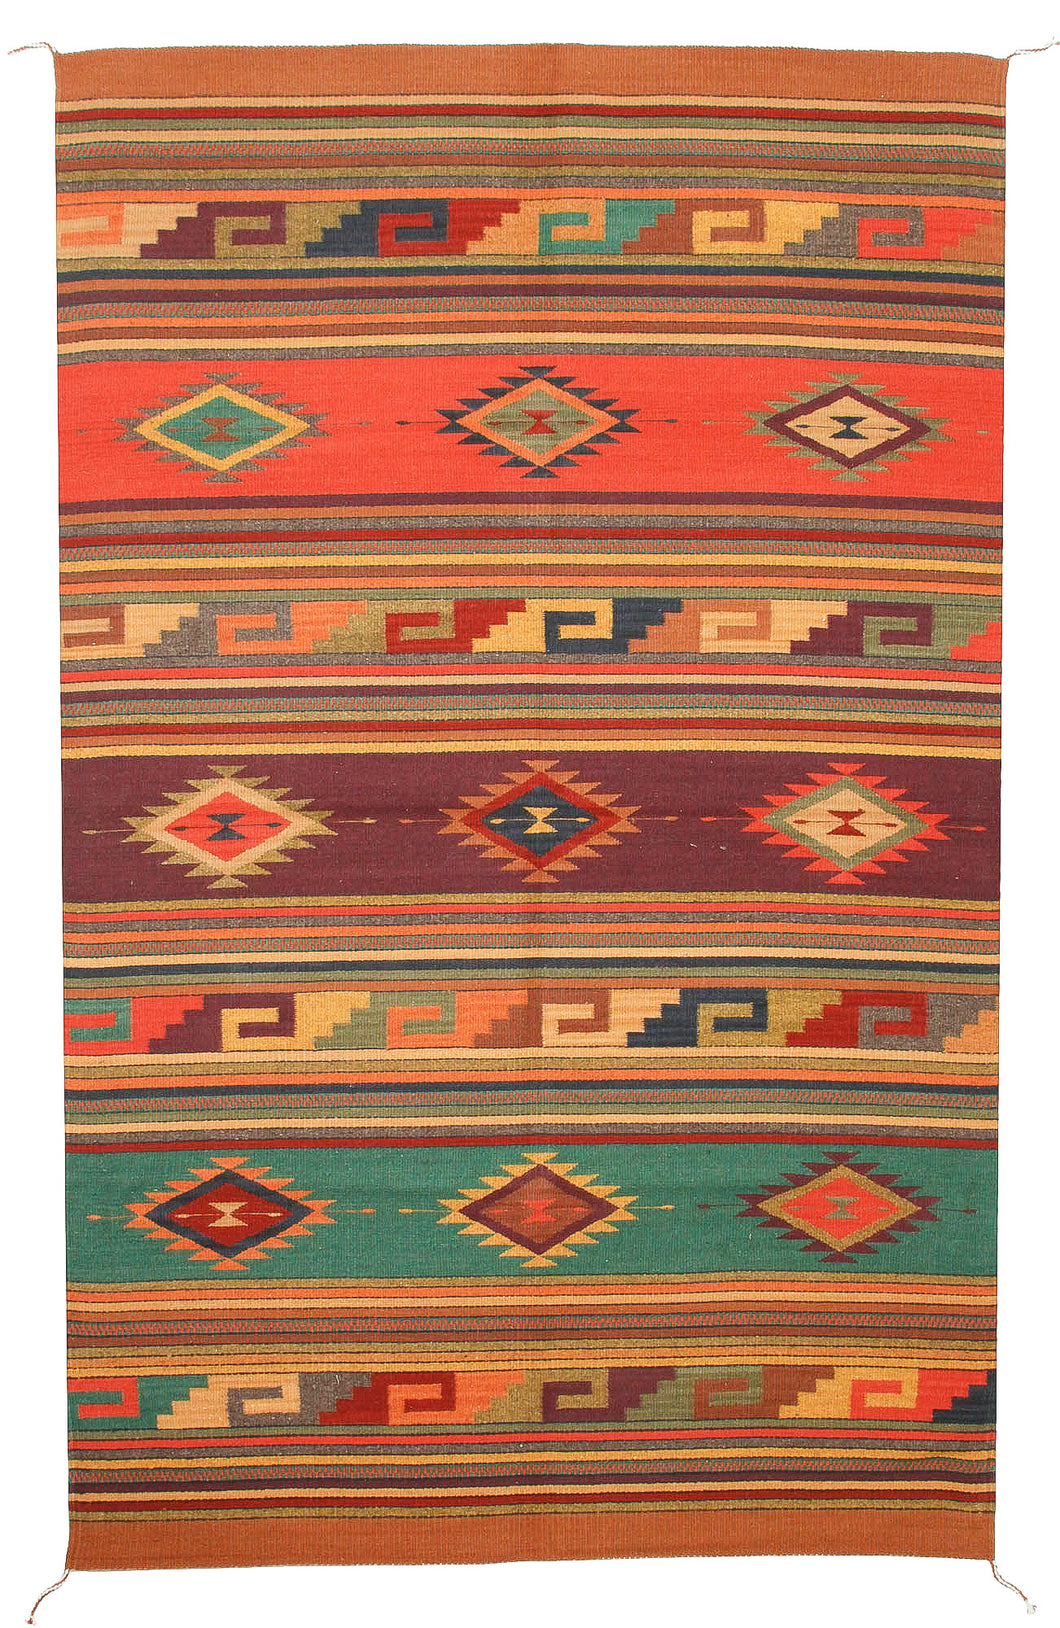 Handwoven Zapotec Indian Rug - Istmo Wool Oaxacan Textile